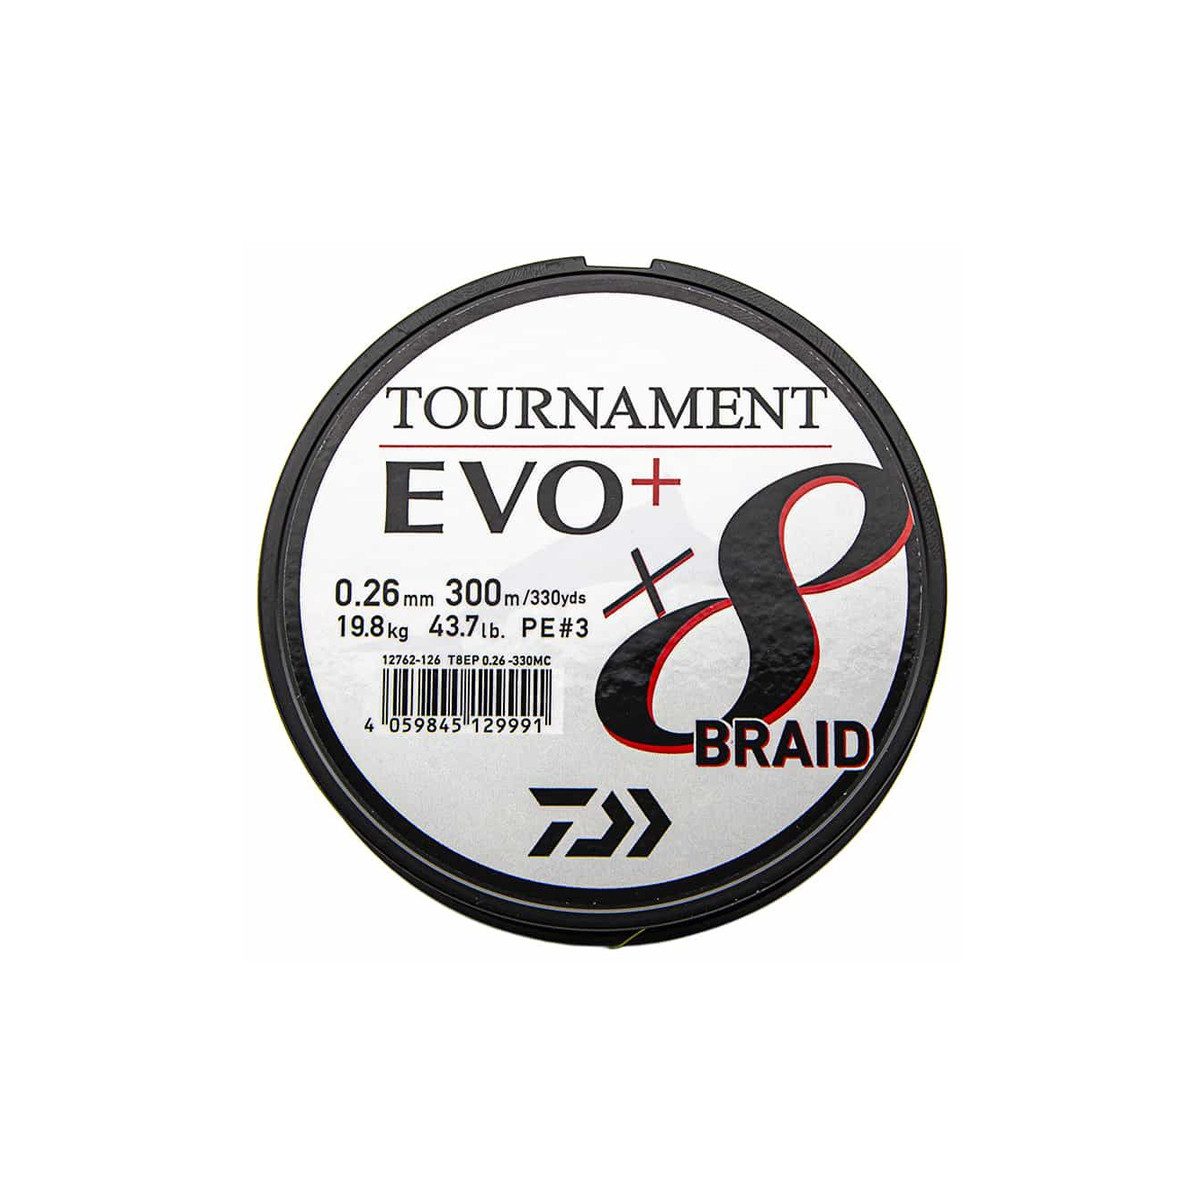 DAIWA TOURNAMENT EVO+ X8 BRAID